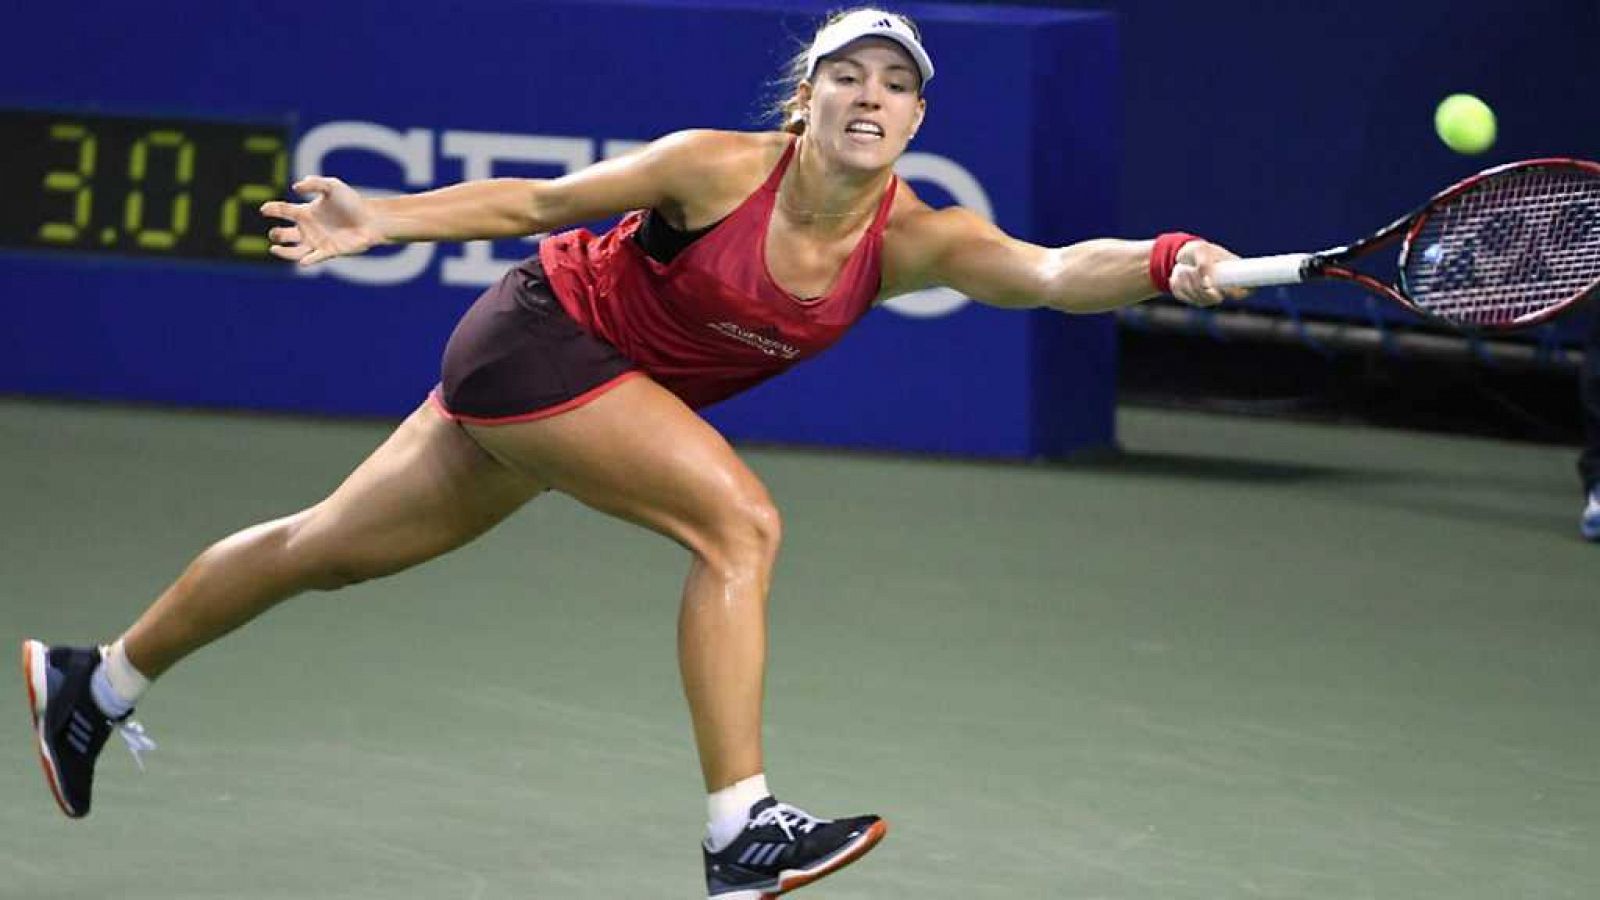 Tenis - WTA Torneo Tokio (Japón): A.Kerber - K.Pliskova